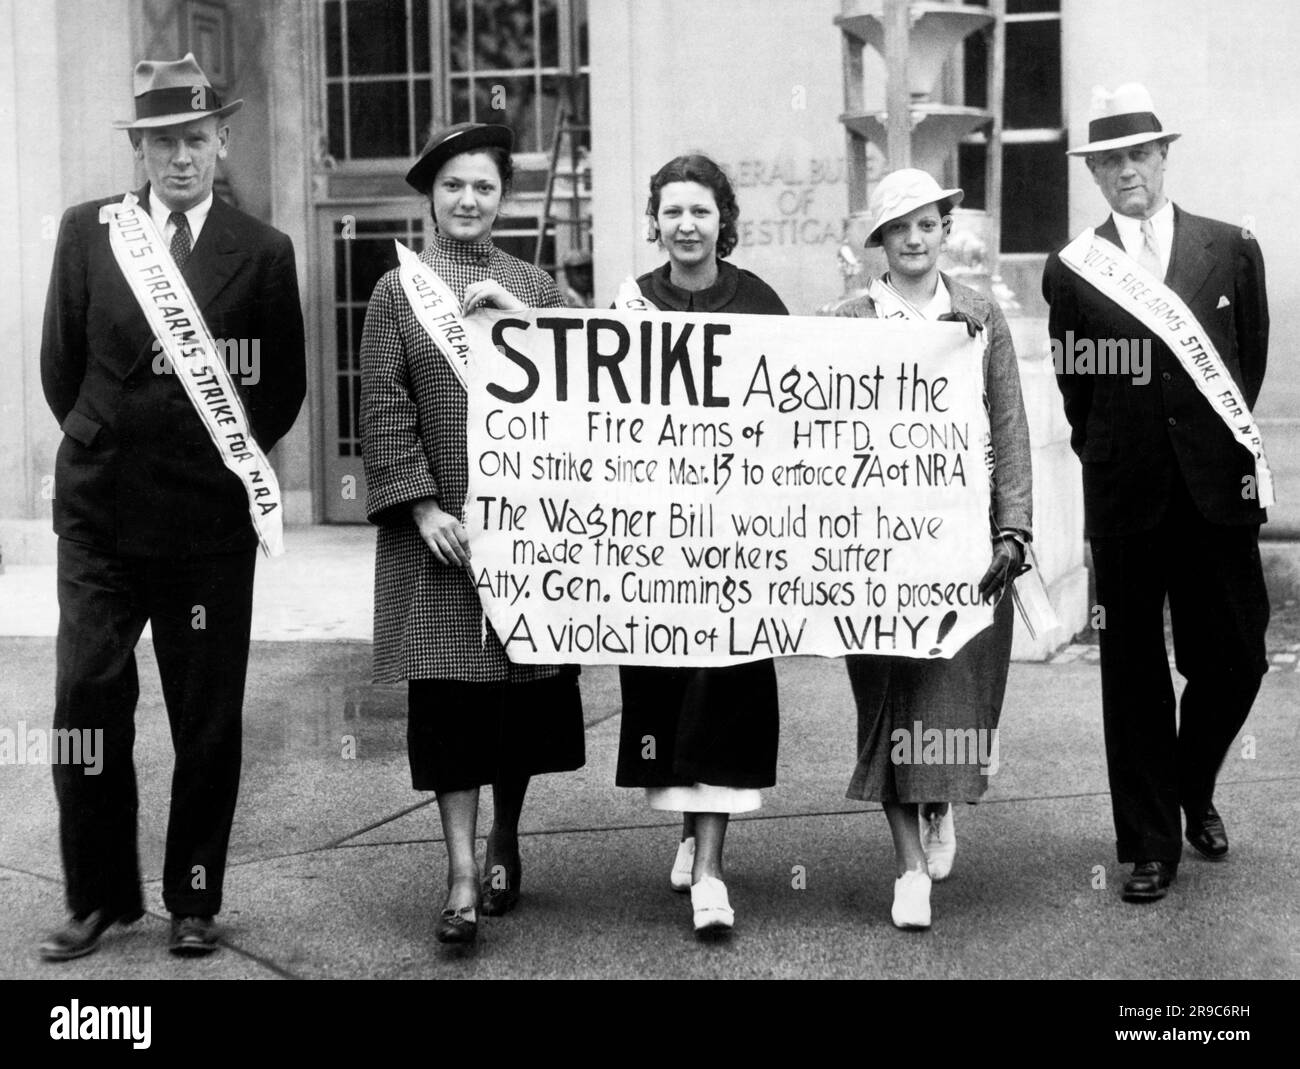 Washington, D.C.: 23 mai 1935 hommes et femmes piquetage devant le Bureau fédéral d'enquête. Ils protestent contre l'absence d'action fédérale dans le cadre de la grève à l'usine Colt Firearms de Hartford, Connecticut, où les mitrailleuses utilisées par les officiers fédéraux sont fabriquées. Banque D'Images